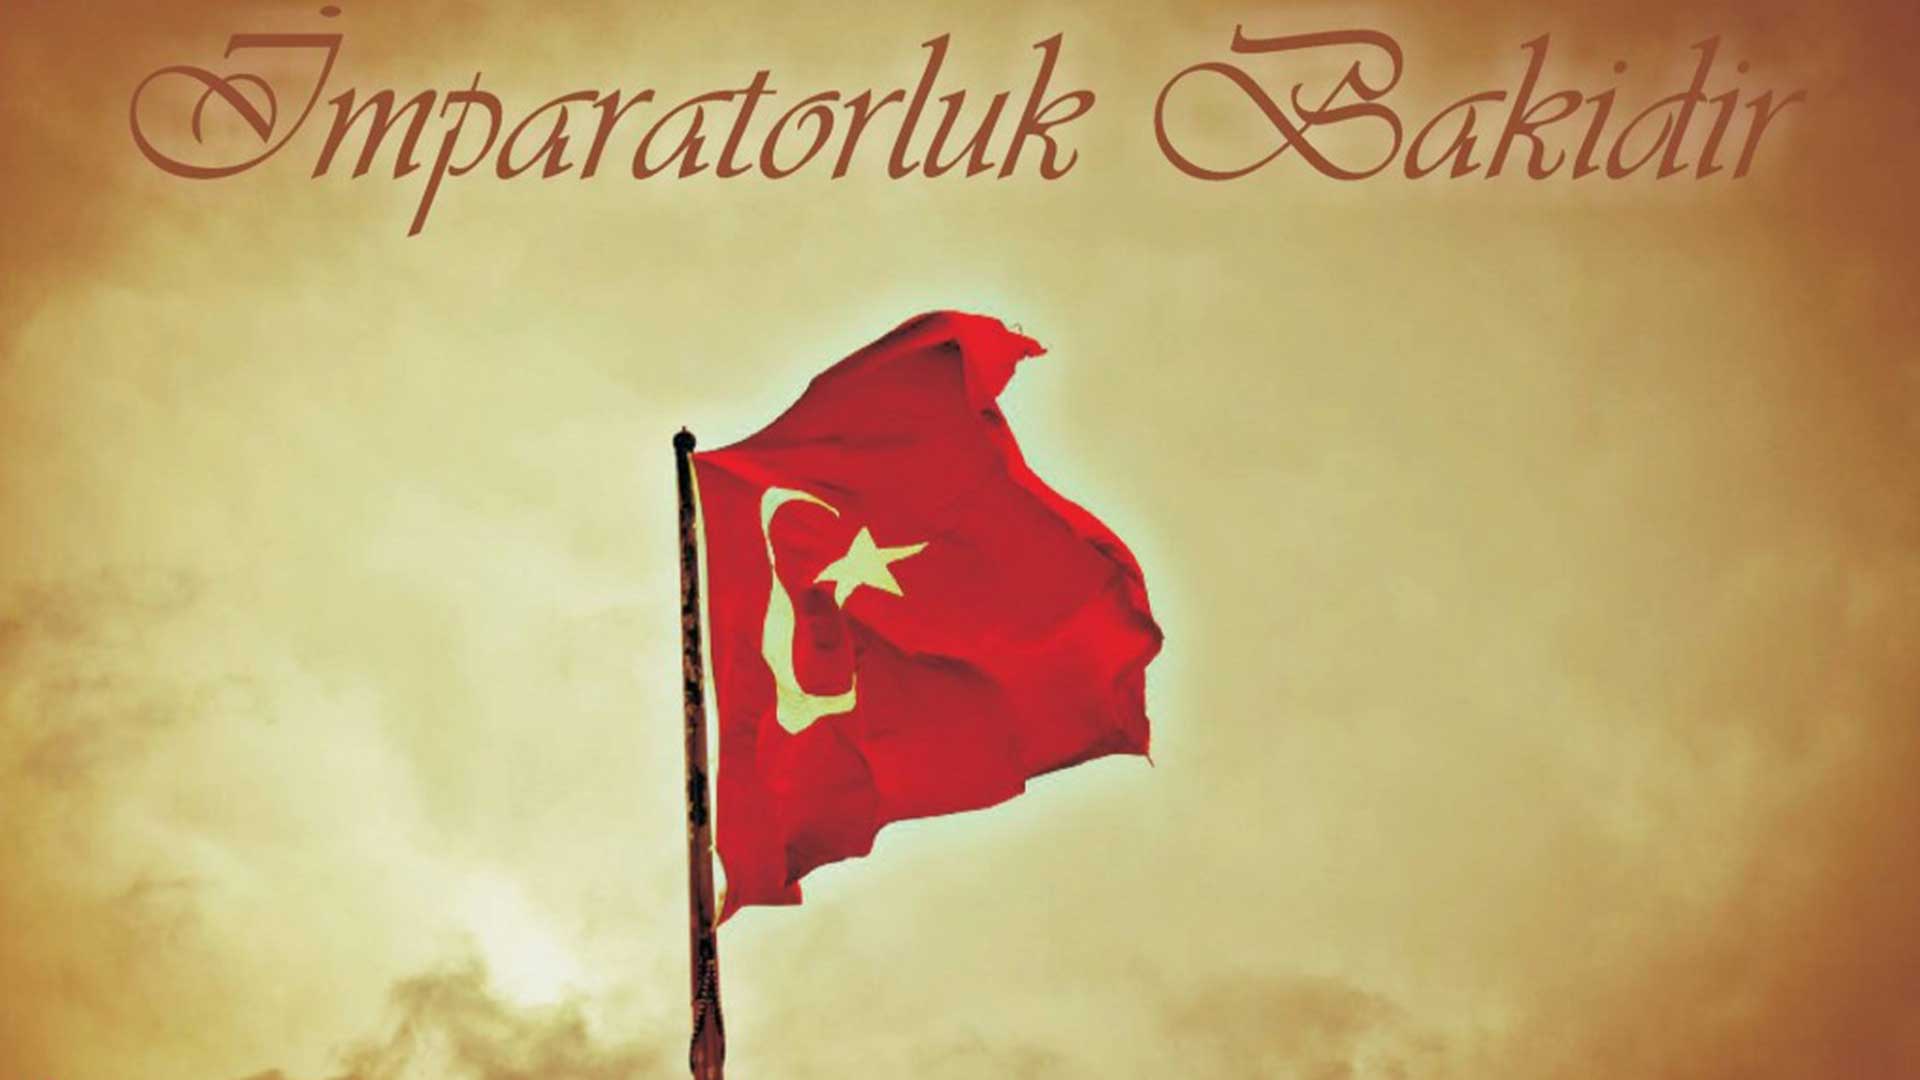 Turk bayragi resimi 19